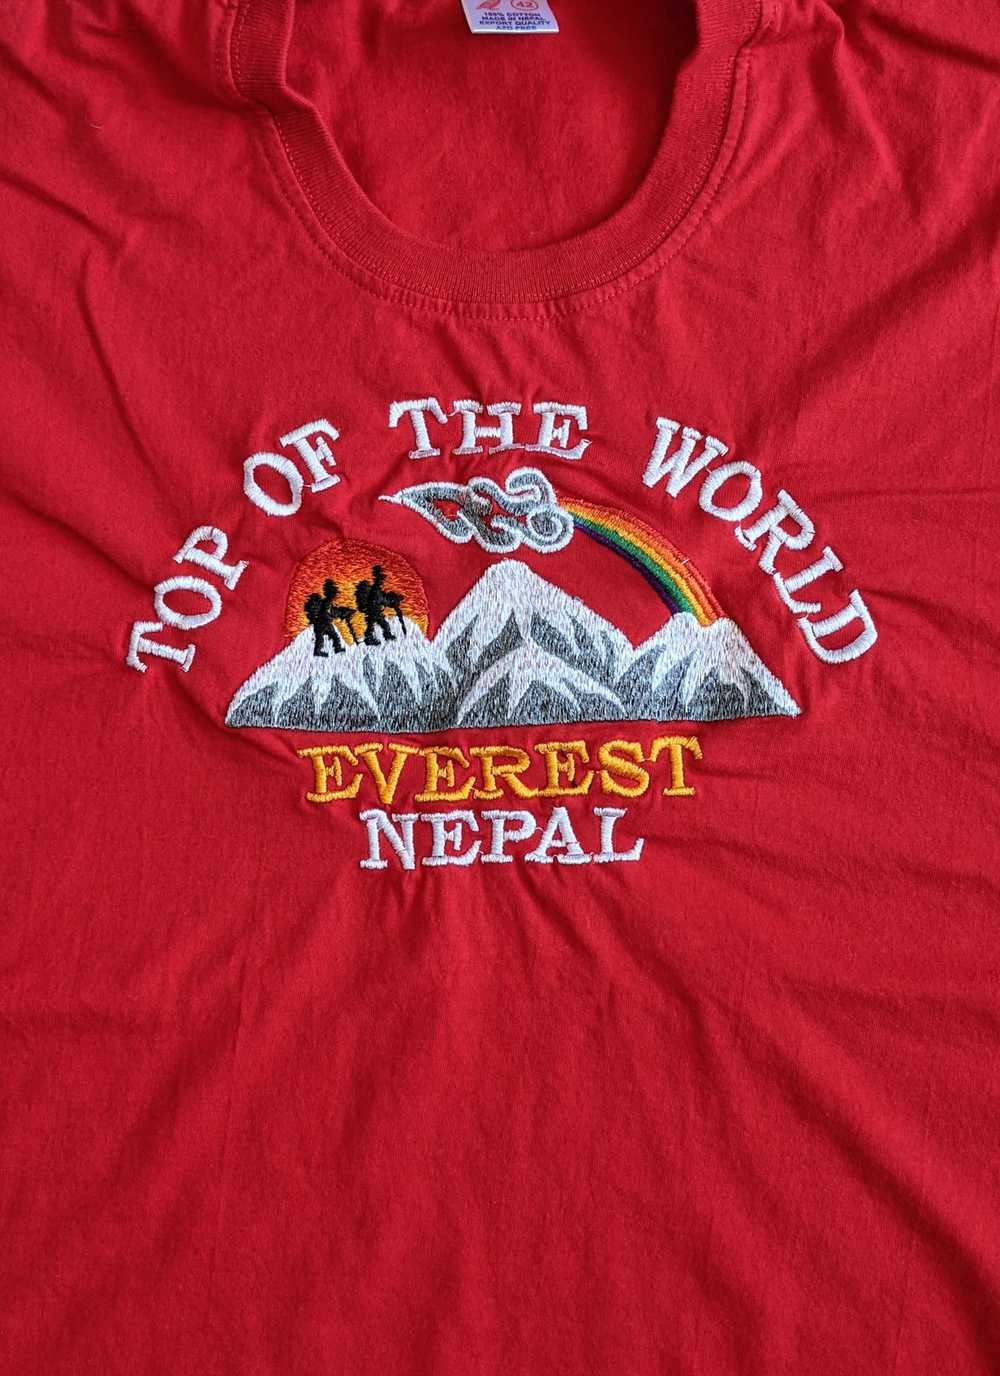 Vintage Vintage Mt. Everest Nepal t-shirt - image 2